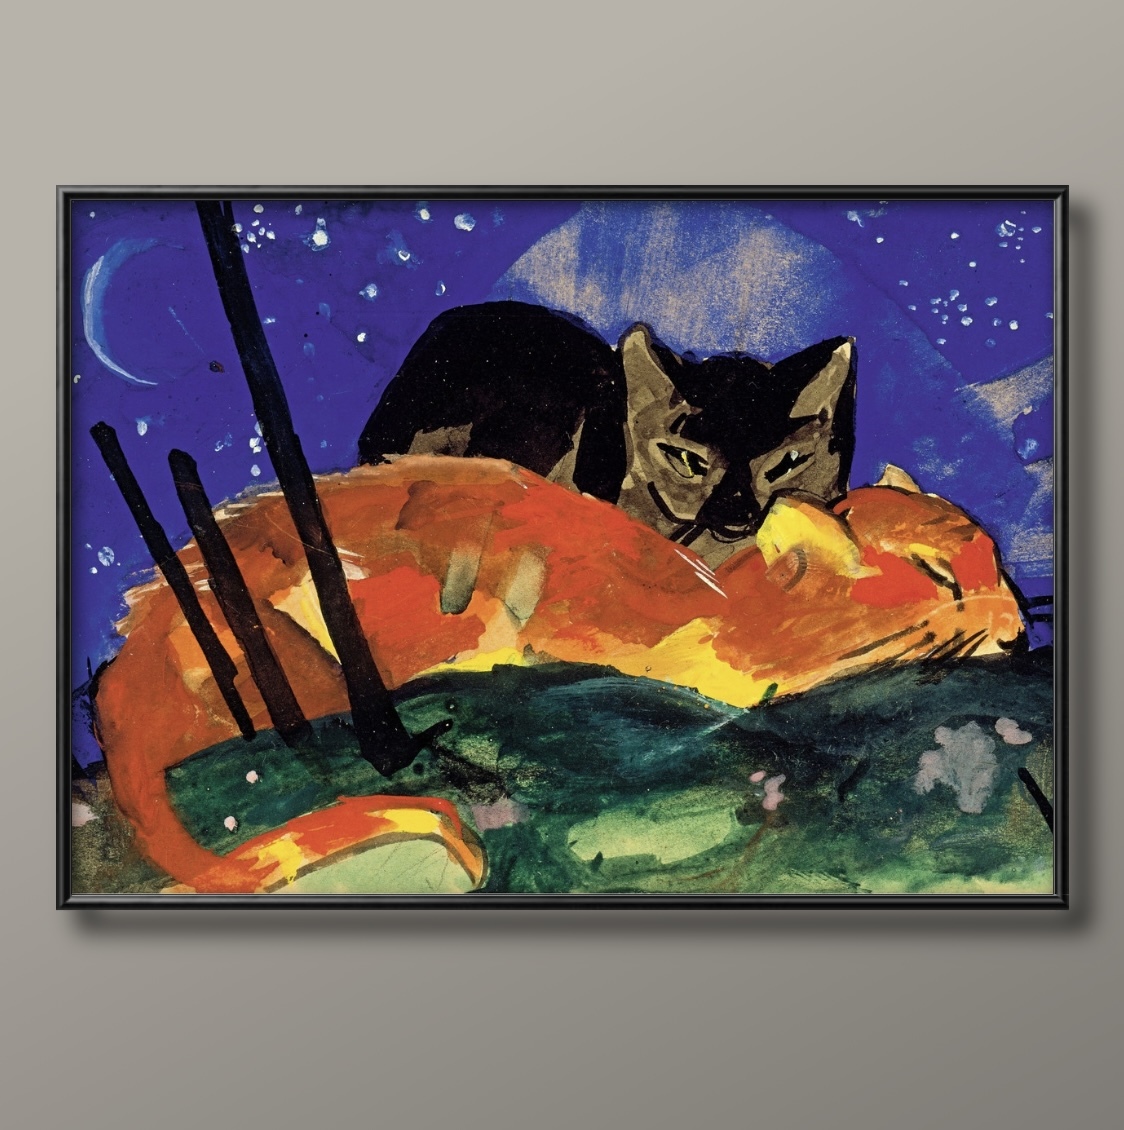 0905■मुफ़्त शिपिंग!! आर्ट पोस्टर पेंटिंग A3 साइज़ फ्रांज मार्क दो बिल्लियाँ चित्रण नॉर्डिक मैट पेपर, आवास, आंतरिक भाग, अन्य